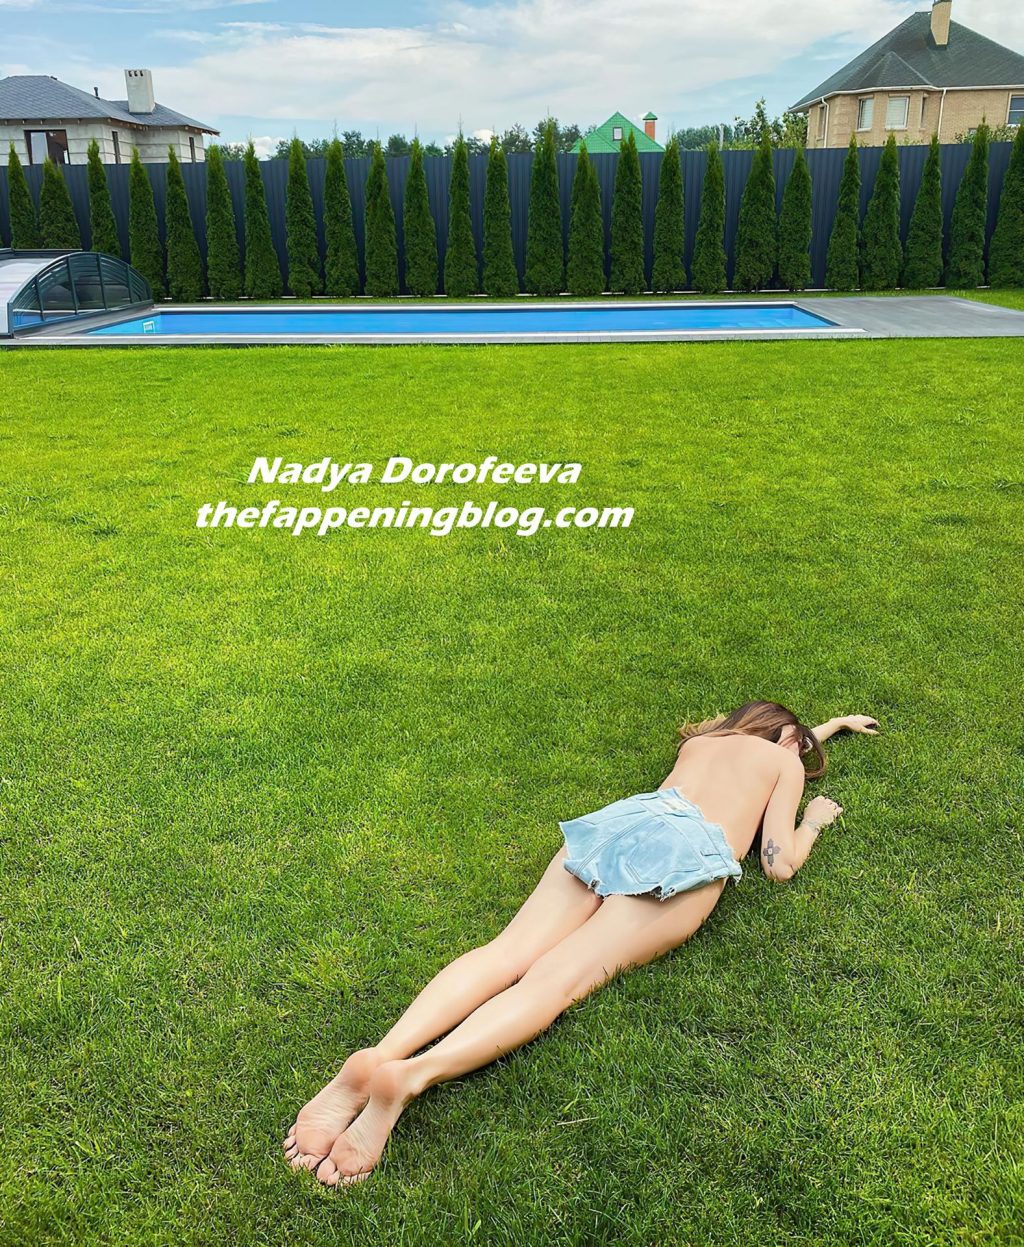 Nadya Dorofeeva Topless (3 Photos)